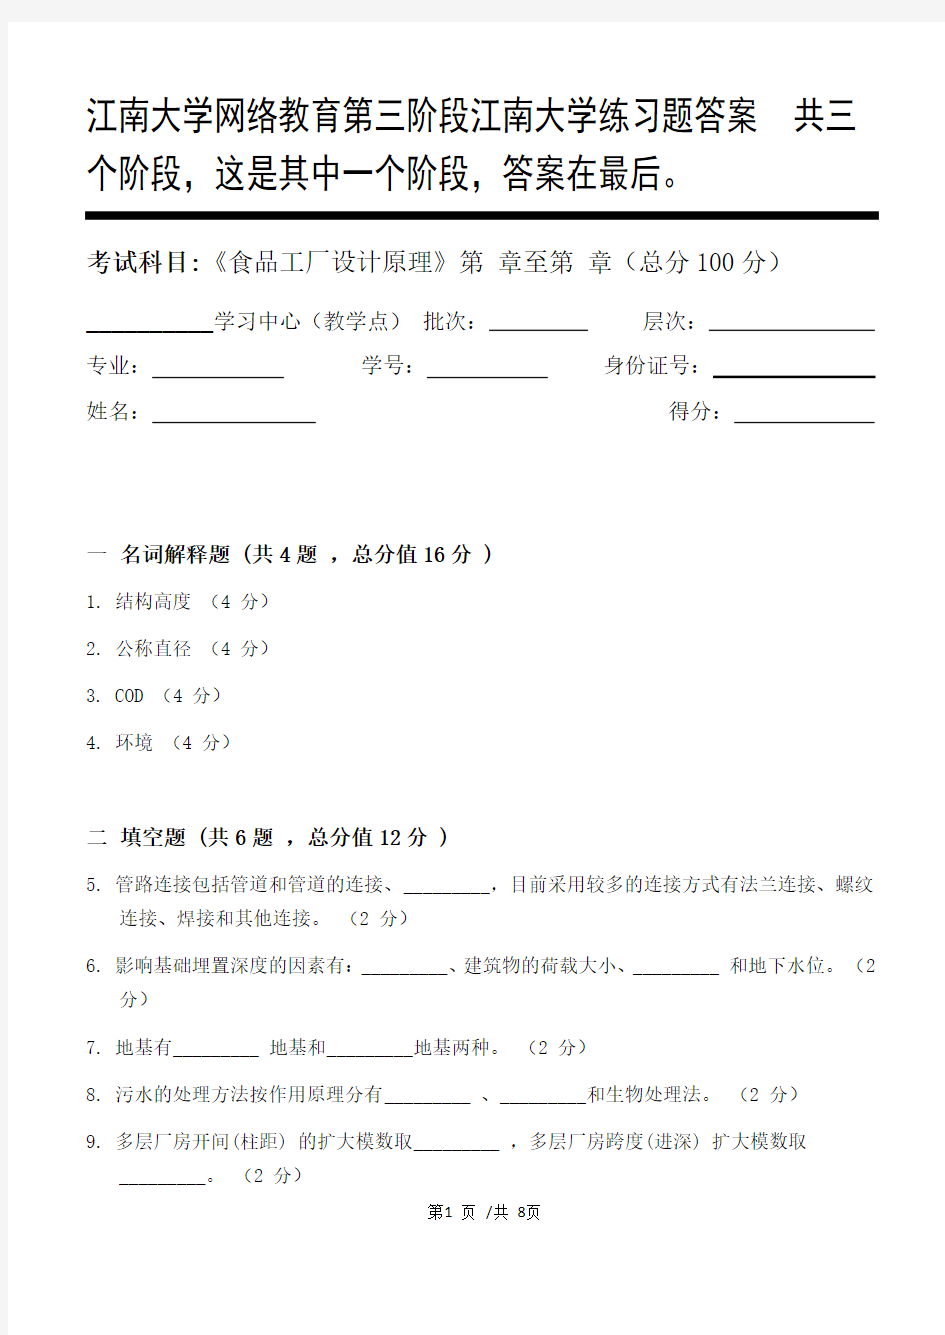 食品工厂设计原理第3阶段江南大学练习题答案  共三个阶段,这是其中一个阶段,答案在最后。